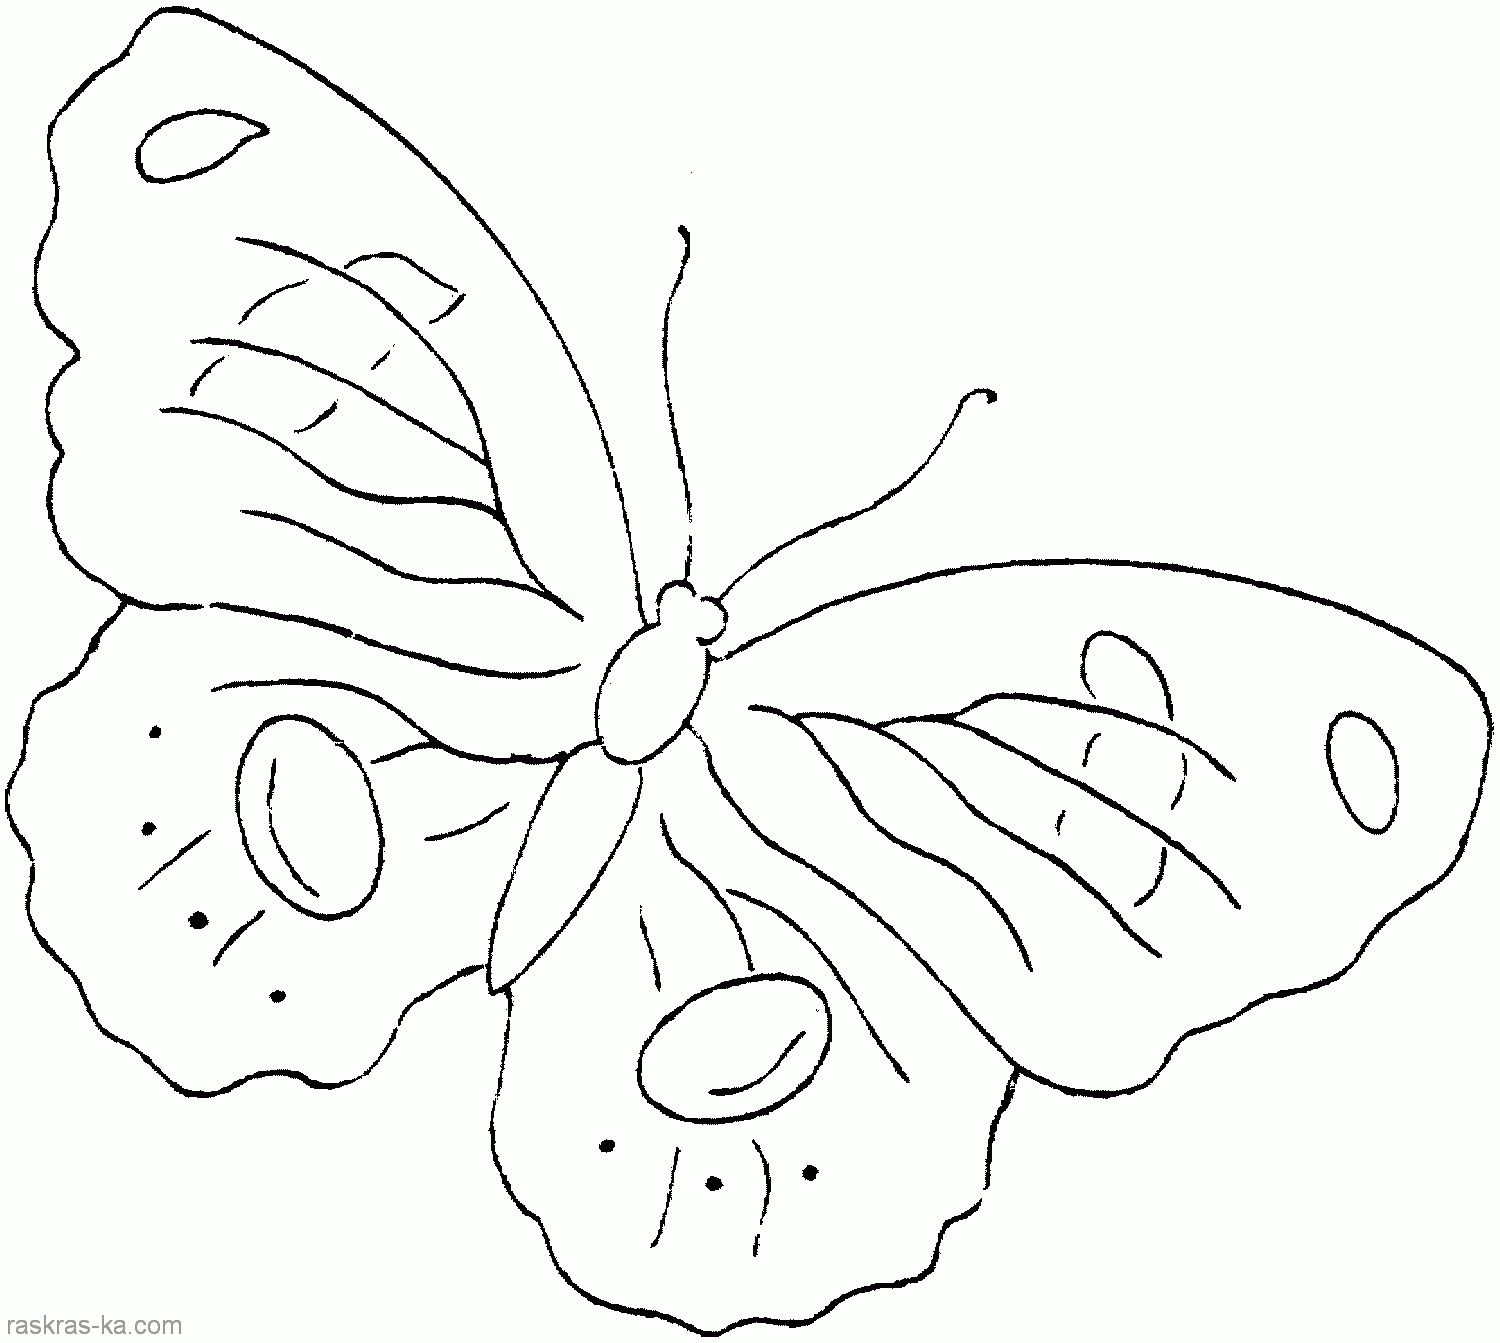 Раскраски с изображением бабочек . Раскраски с изображением разных видов бабочек . Разукрашки для всех членов семьи с изображением грациозных бабочек .             